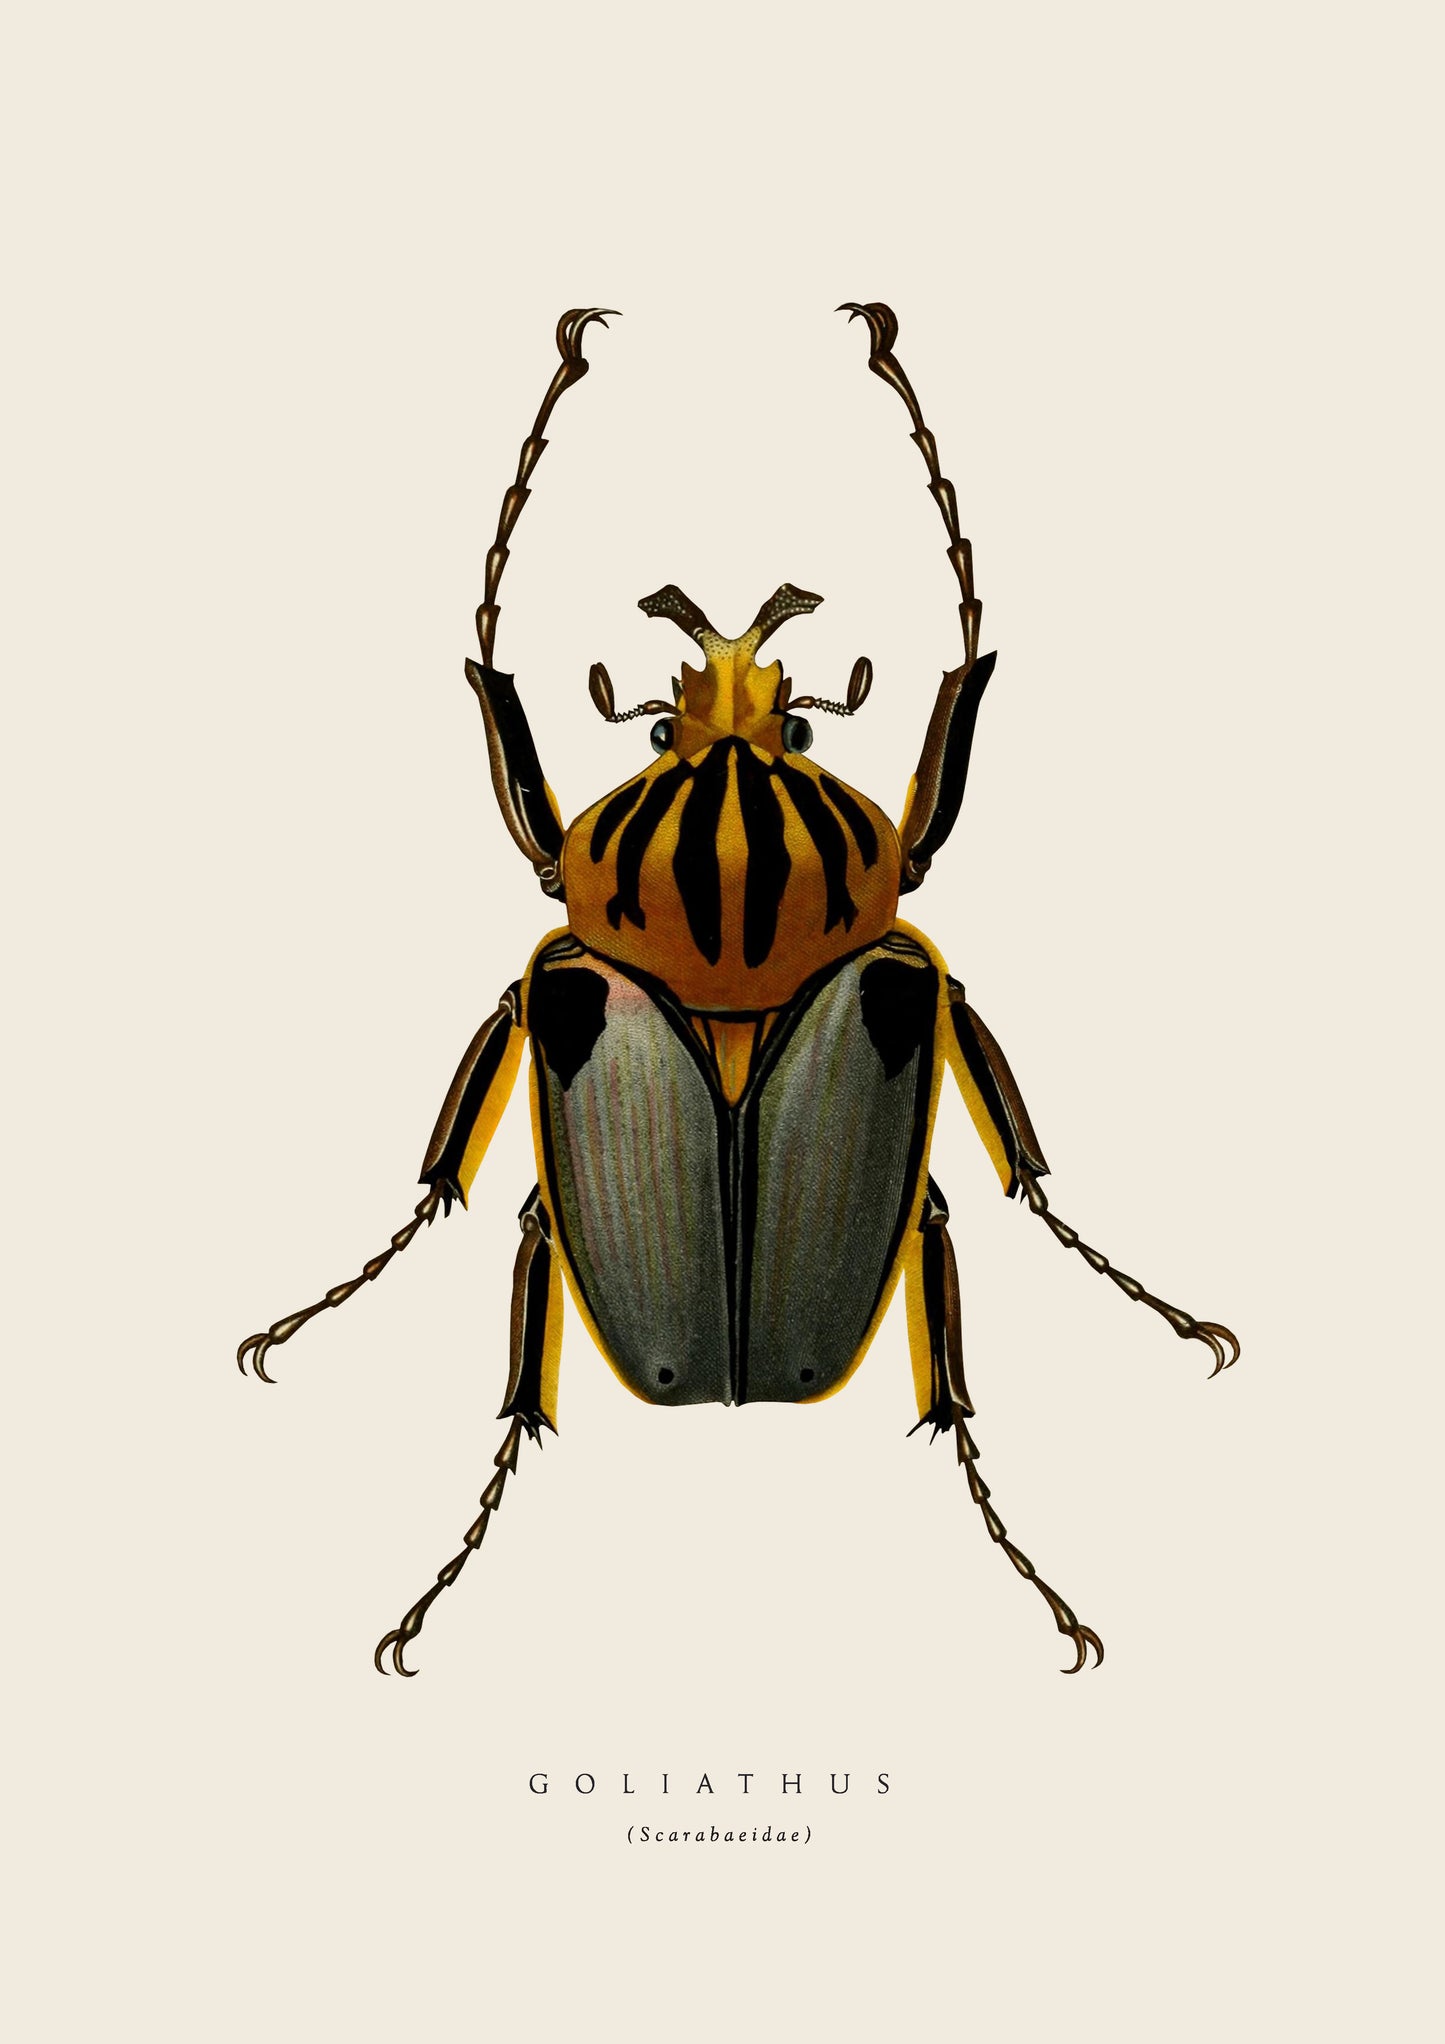 Yellow Beetle